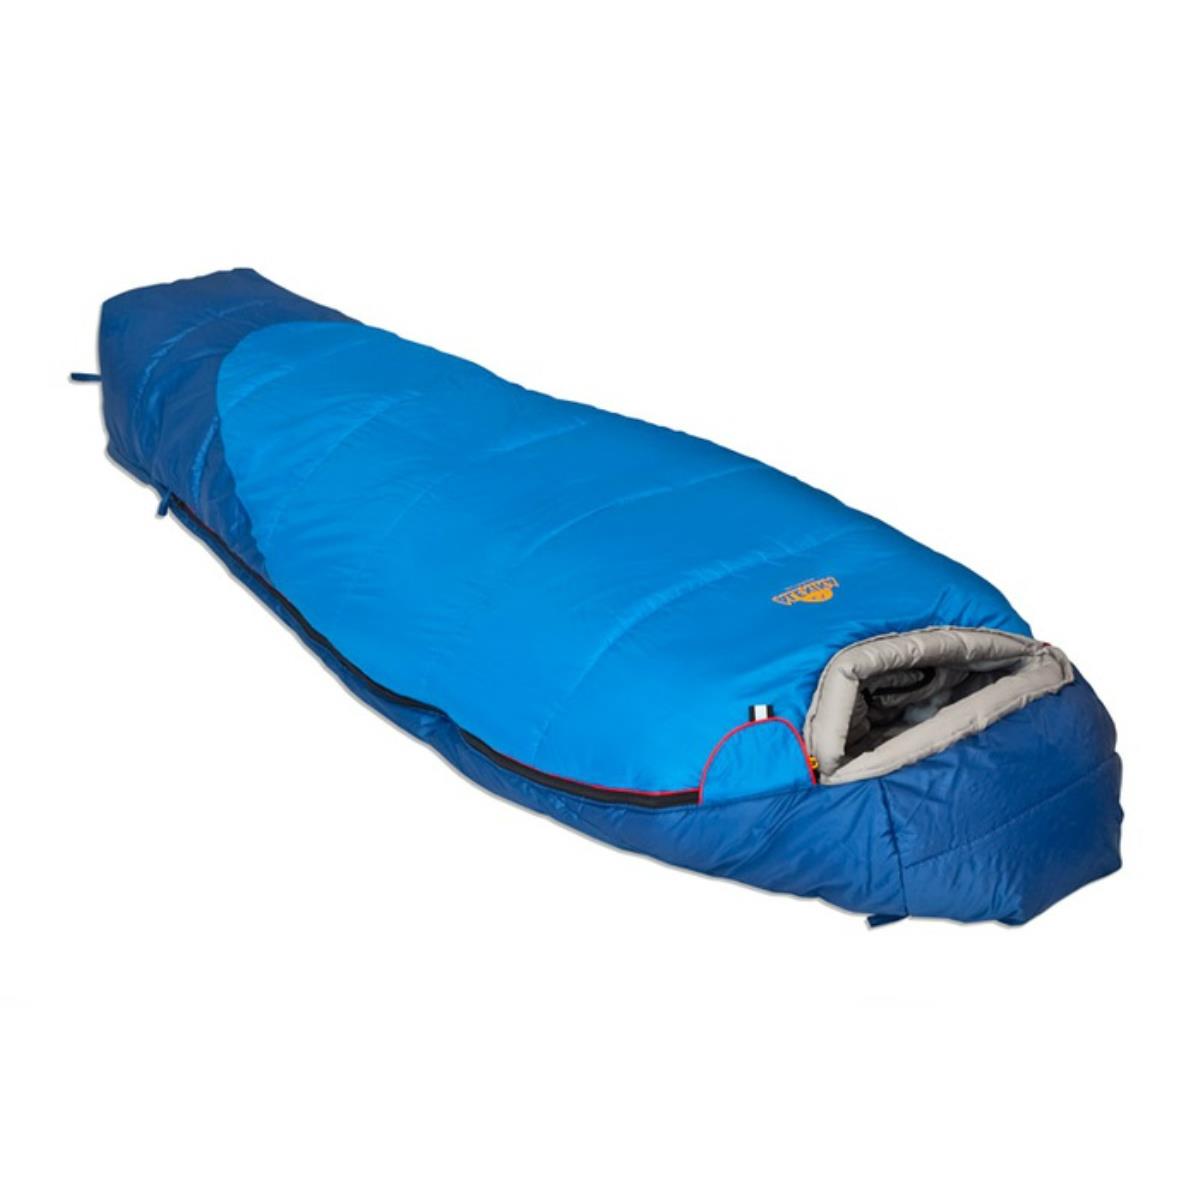 Мешок спальный MOUNTAIN Scout левый (9224.01052) ALEXIKA спальный мешок туристический 220 х 75 см до 20 градусов 700 г м2 синий